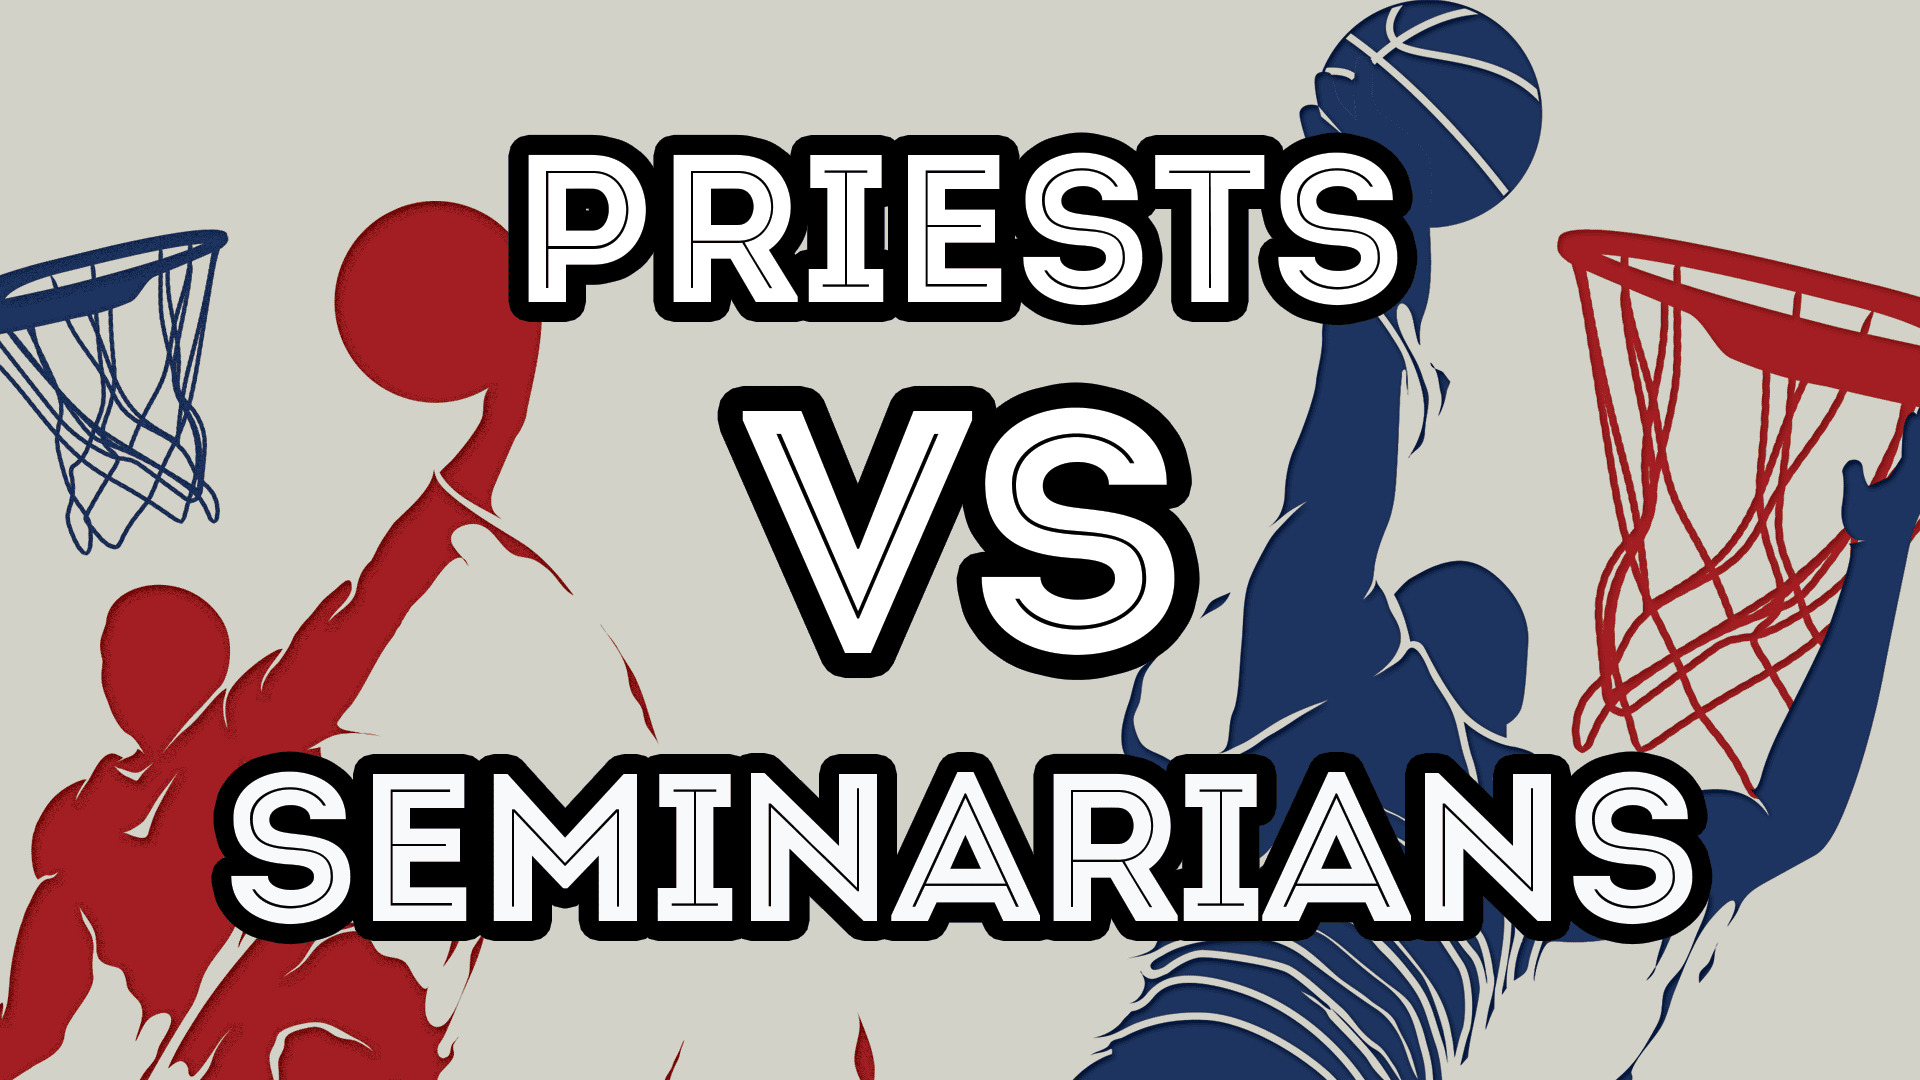 priests vs seminarians banner